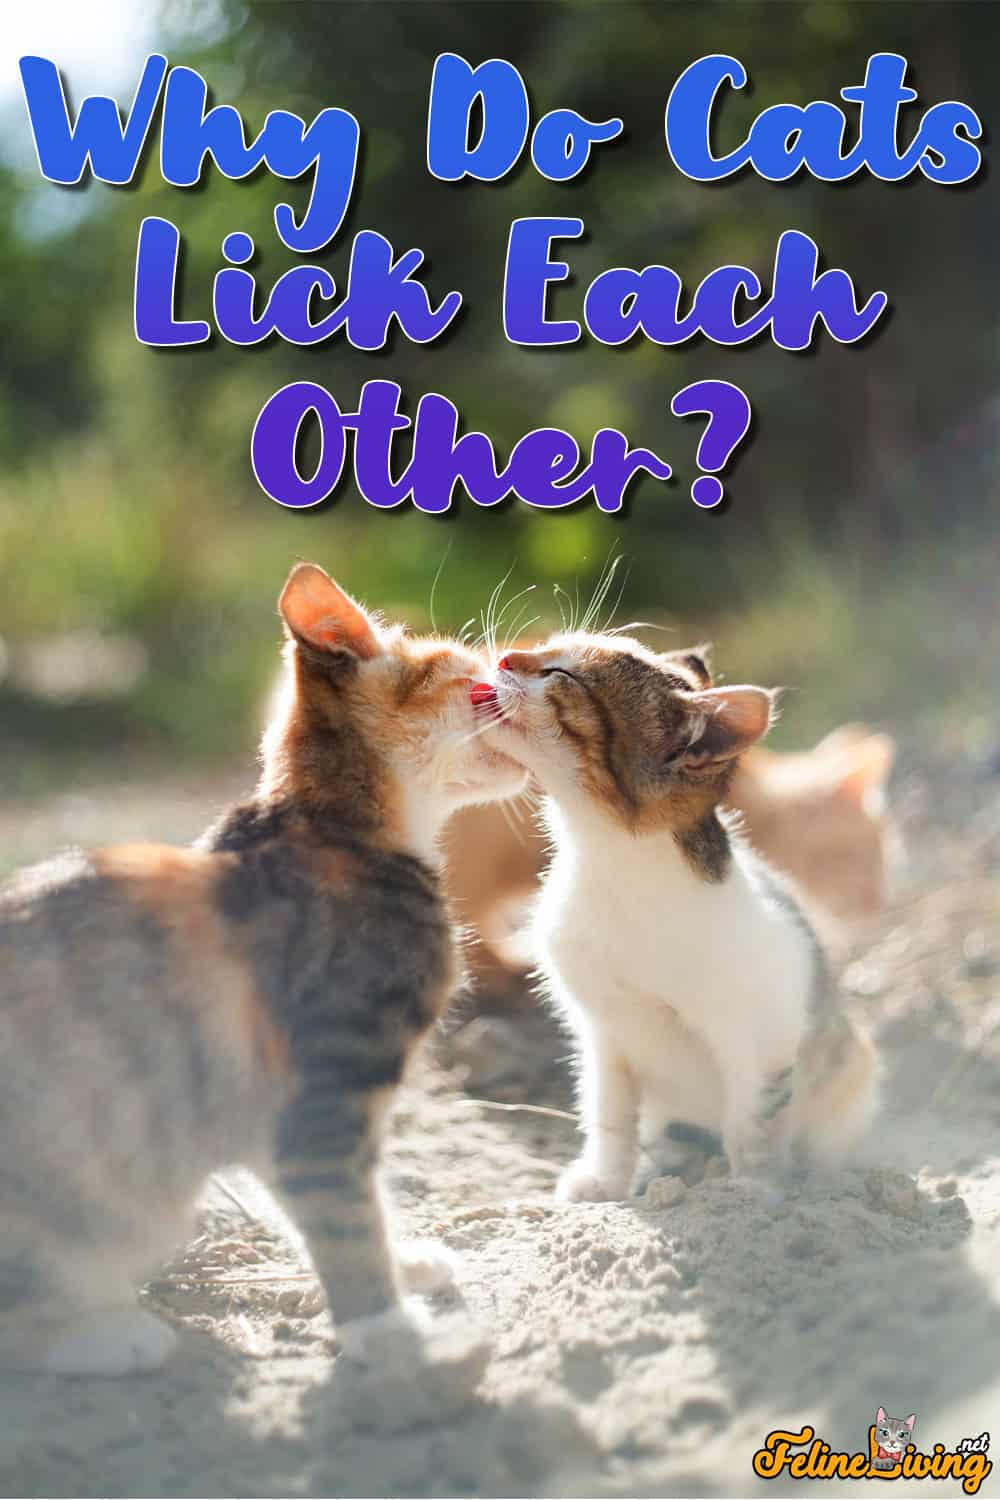 Waarom likken katten elkaar? Sociale verzorging bij katten uitgelegd